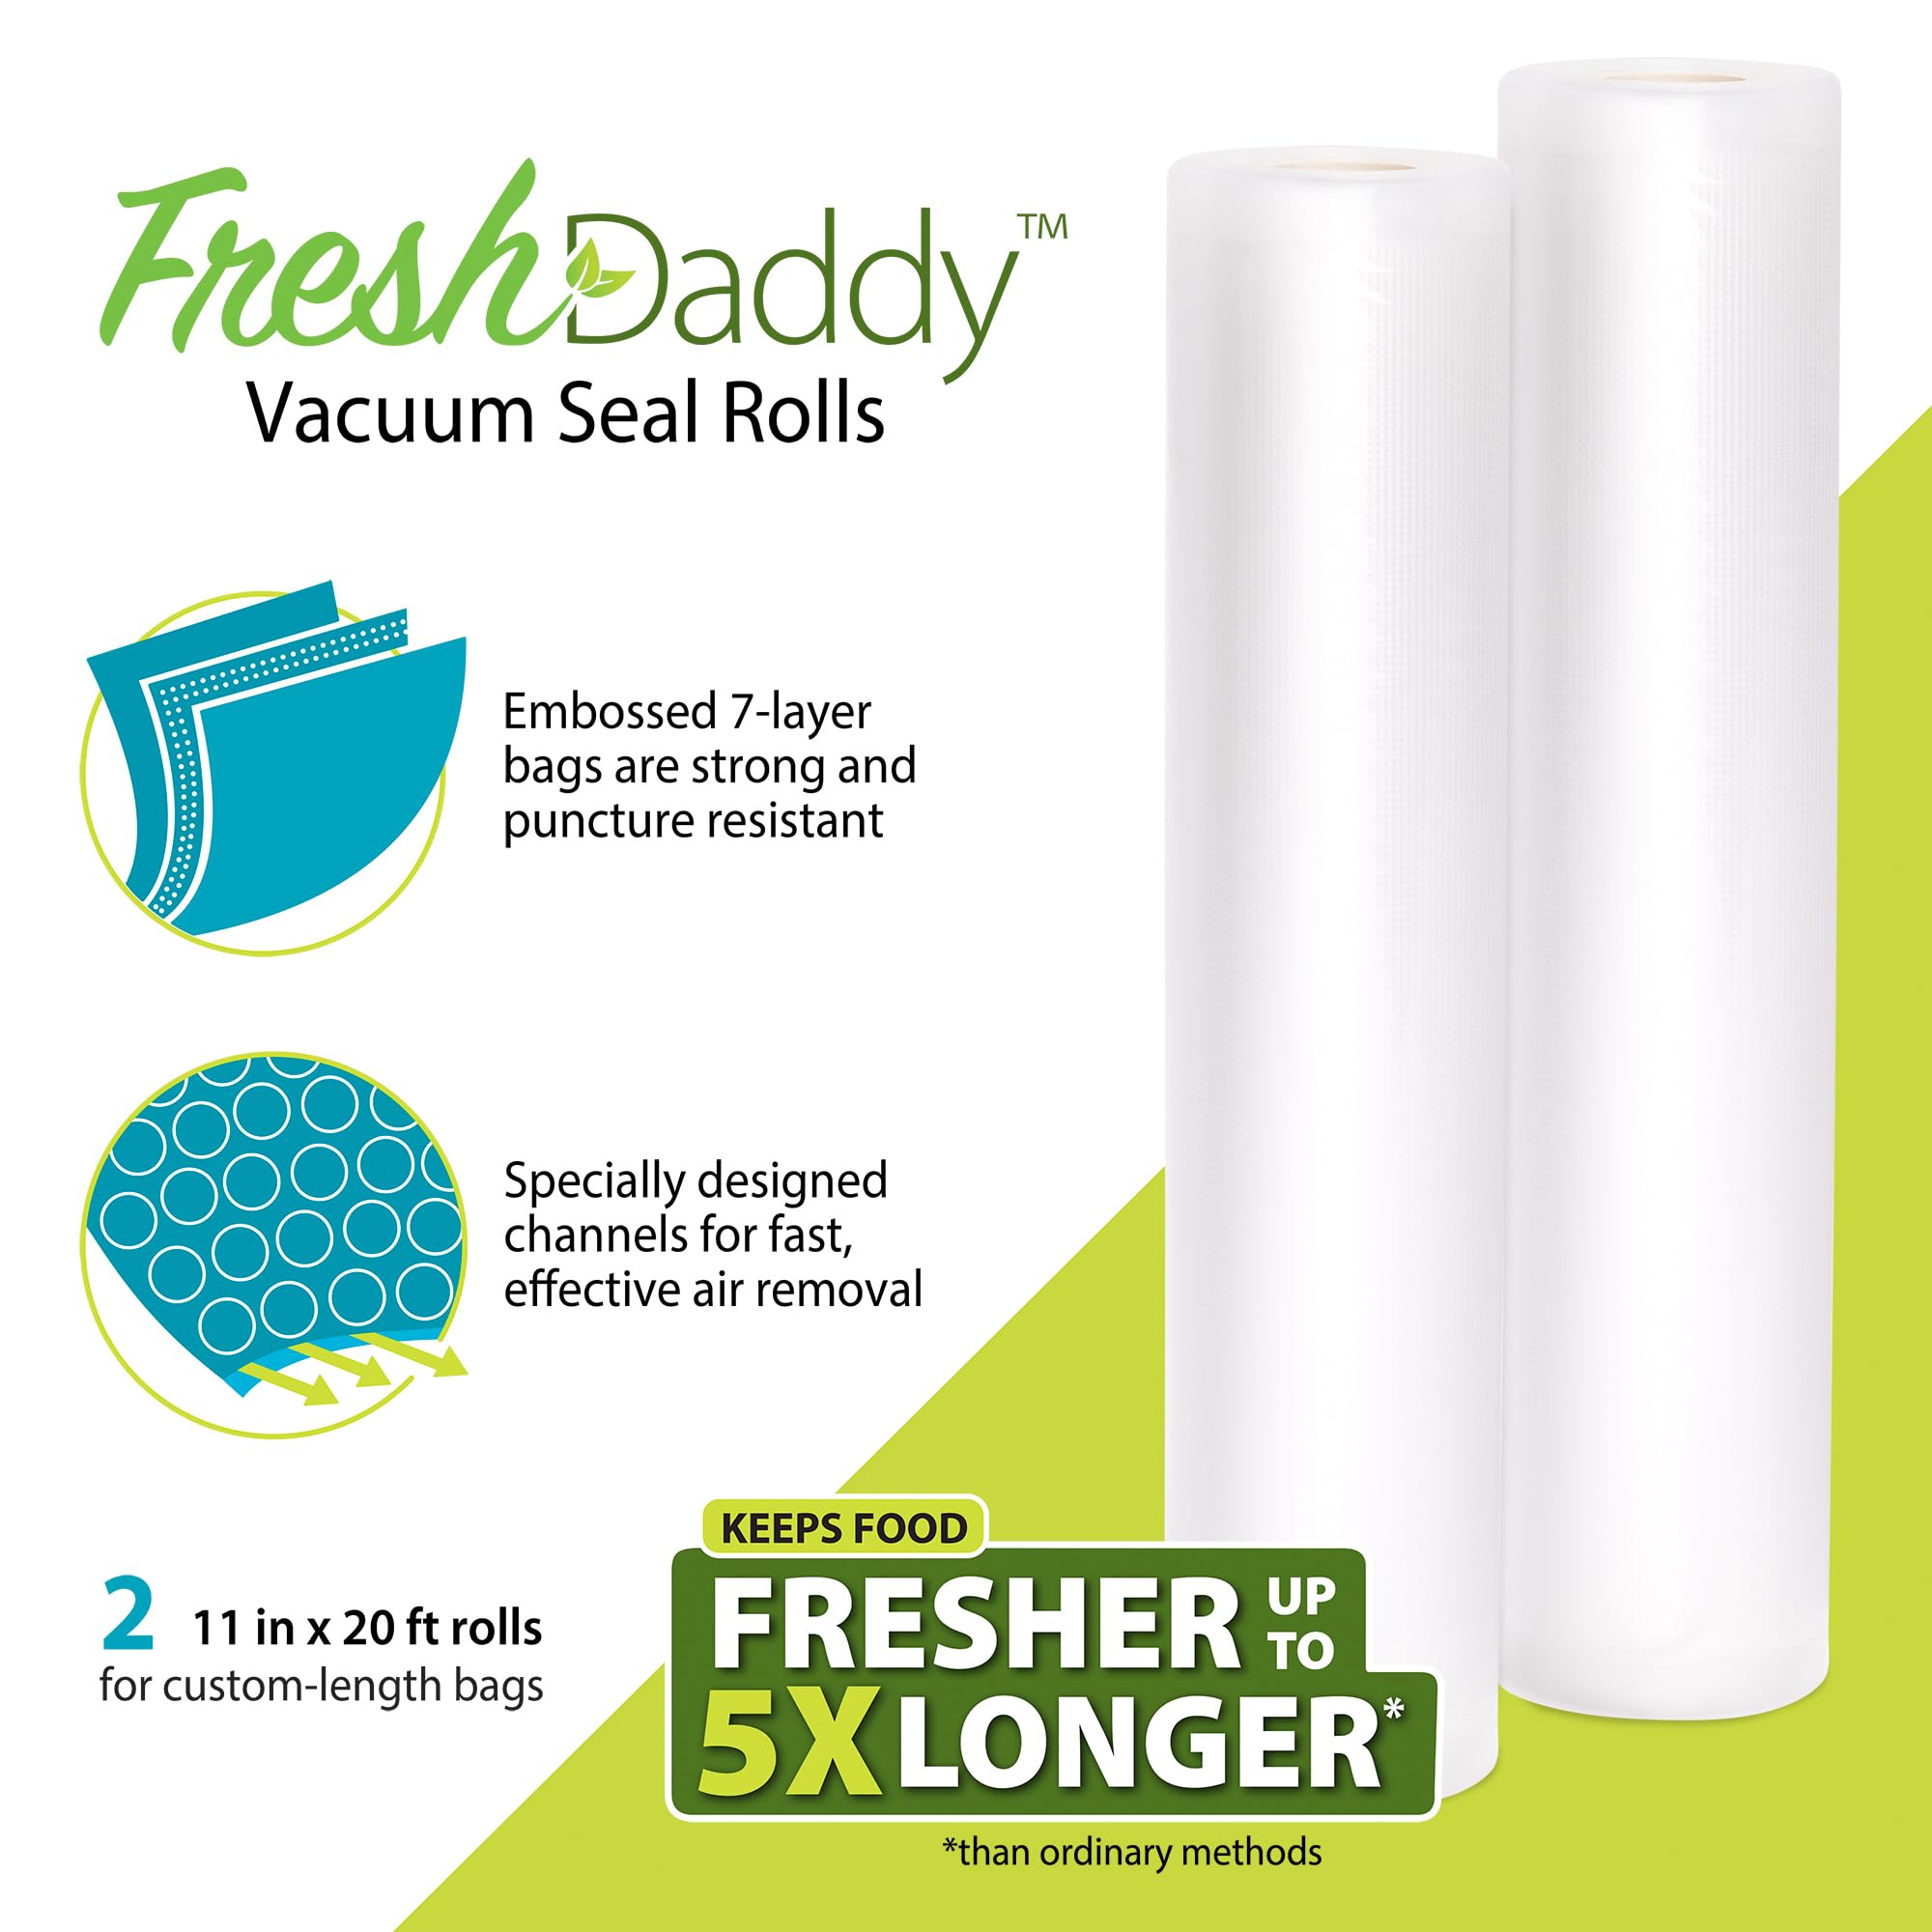 FreshDaddy™ 09511 Vacuum Seal Rolls for custom-length bags